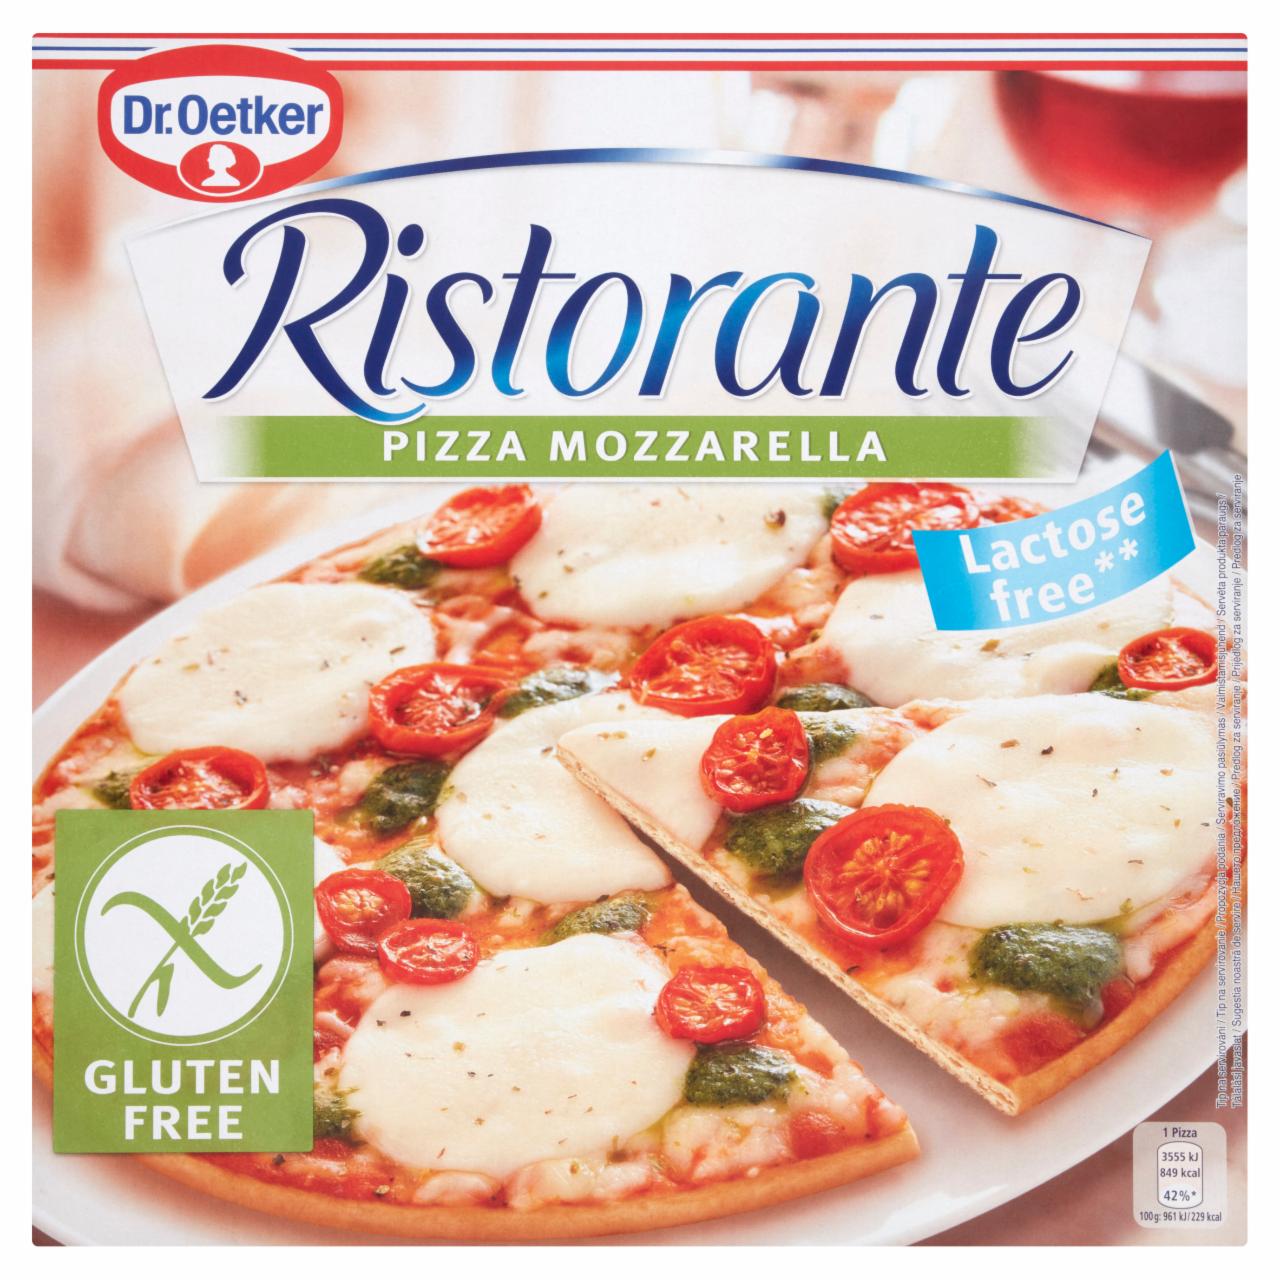 Képek - Dr. Oetker Ristorante Pizza Mozzarella gyorsfagyasztott gluténmentes pizza mozzarella sajttal 370 g